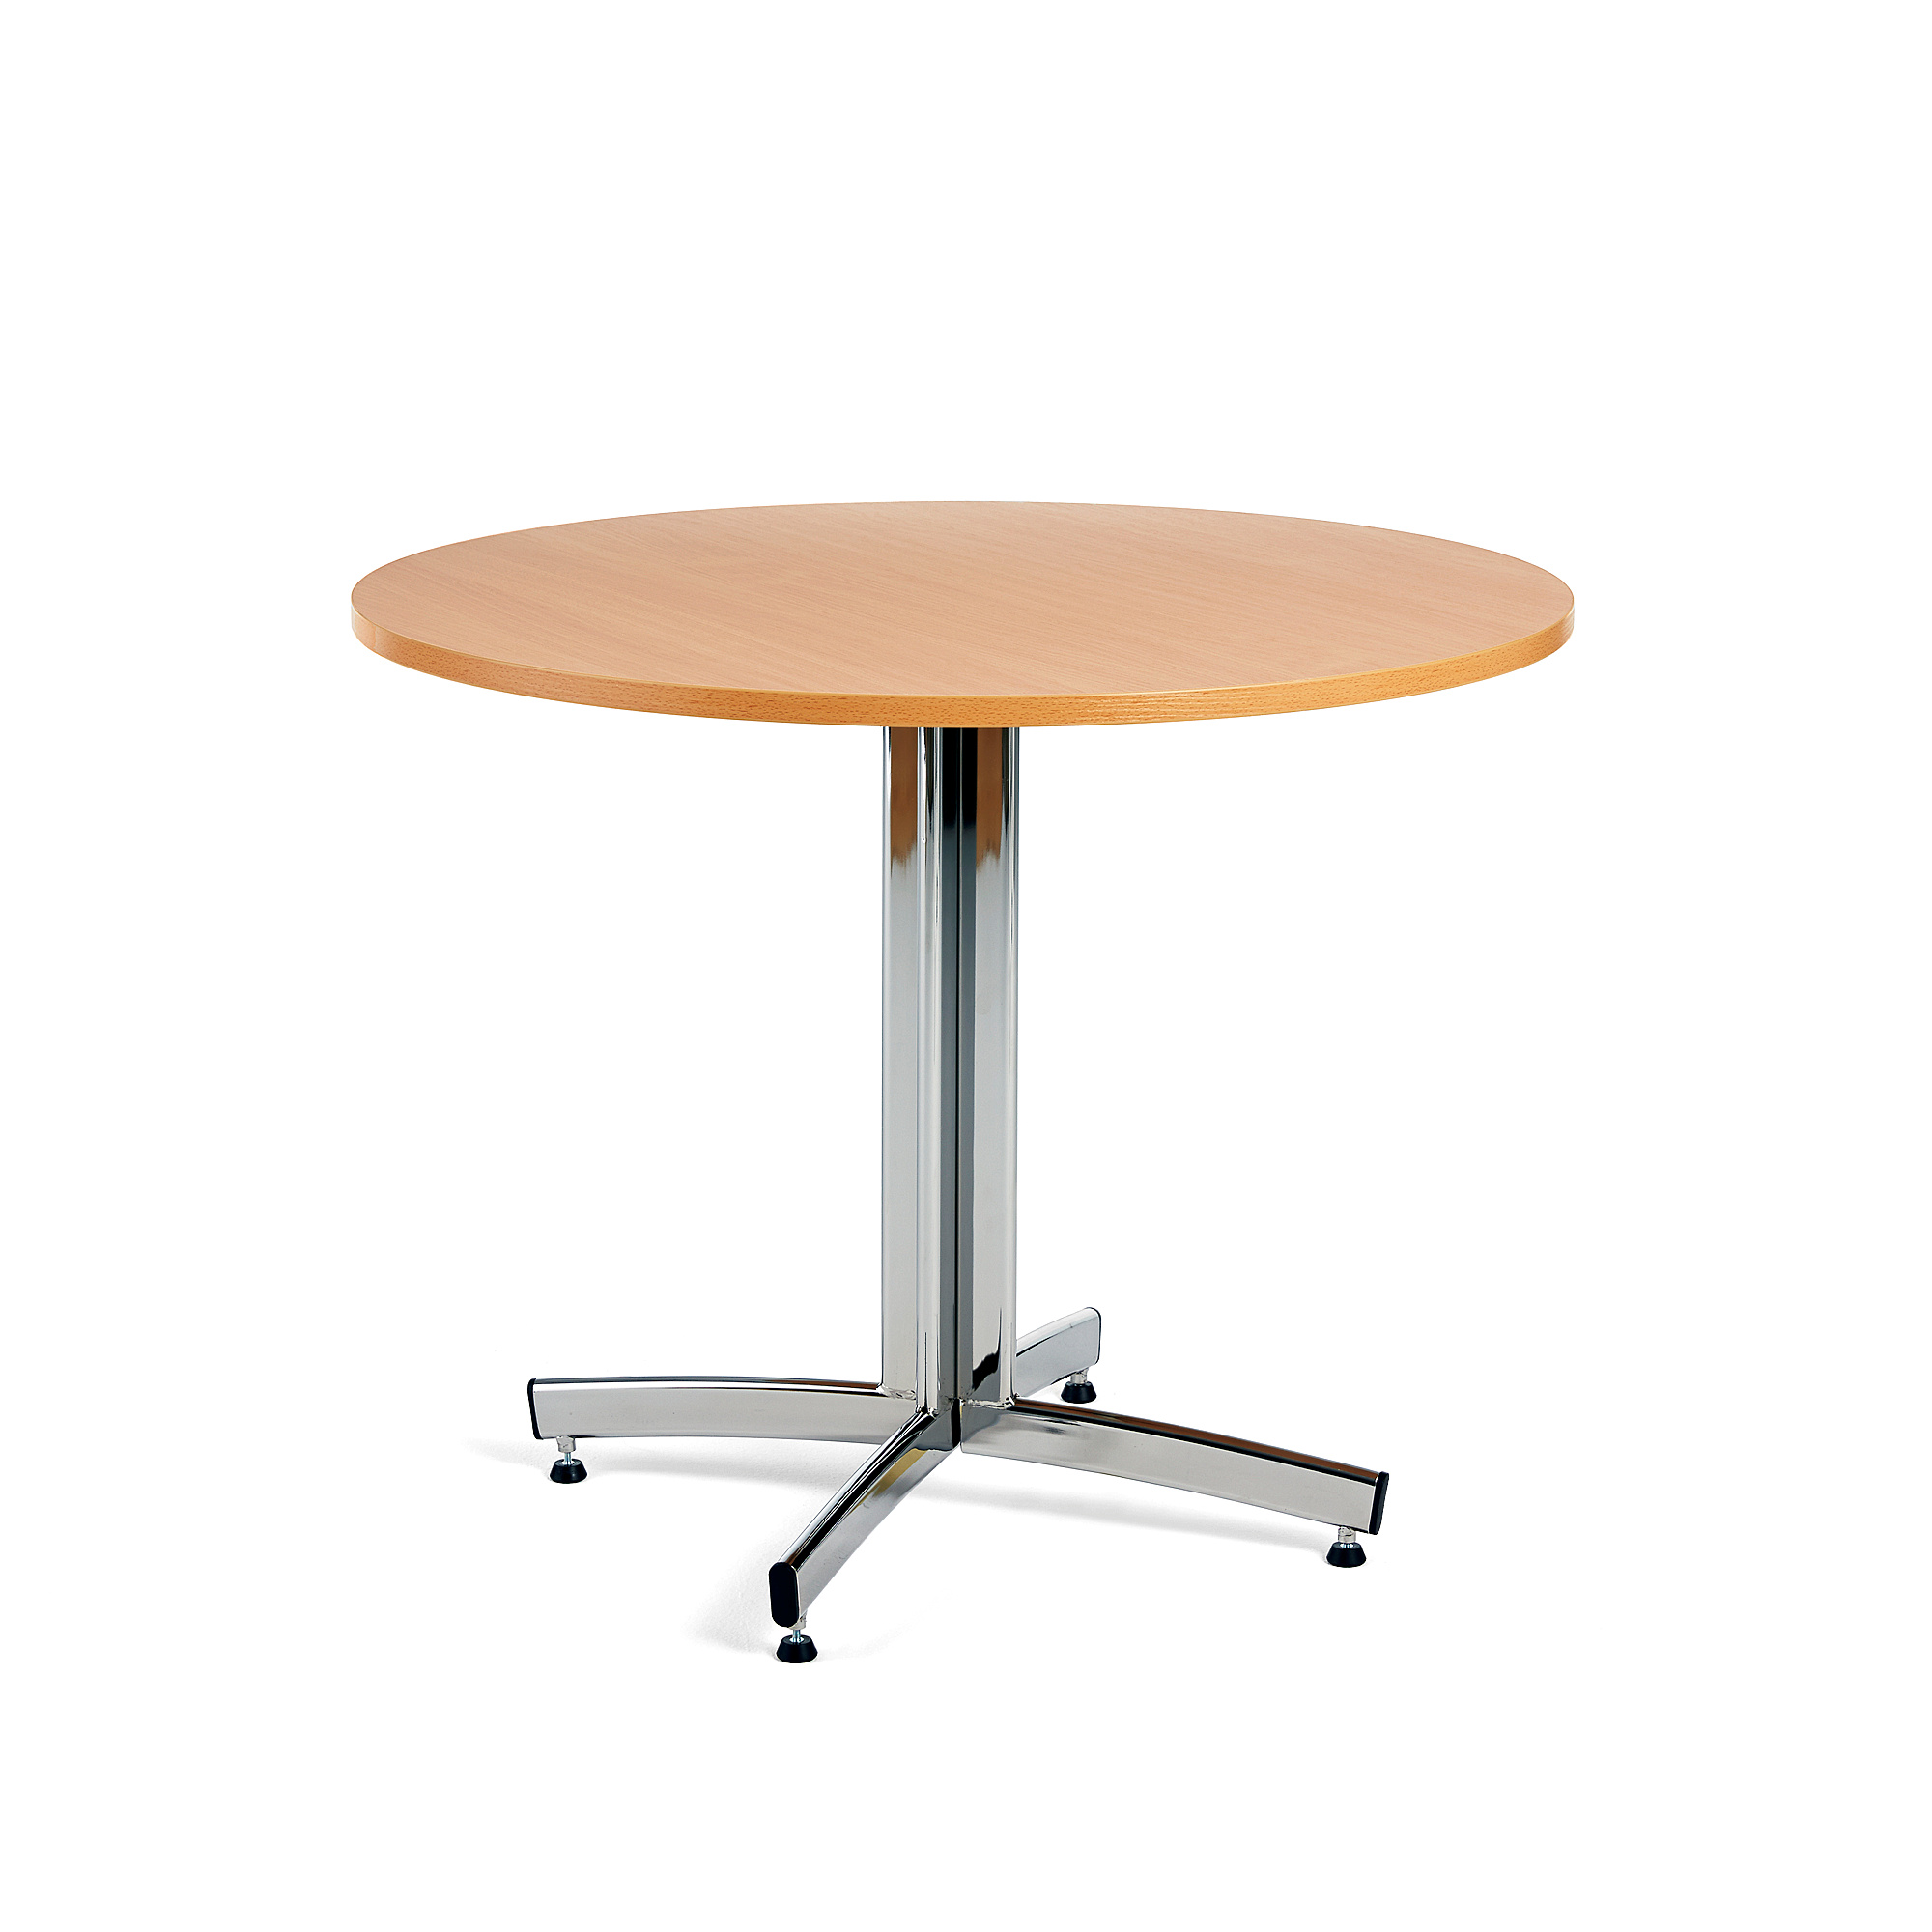 Jedálenský stôl SANNA, okrúhly Ø 900 x V 720 mm, buk / chróm